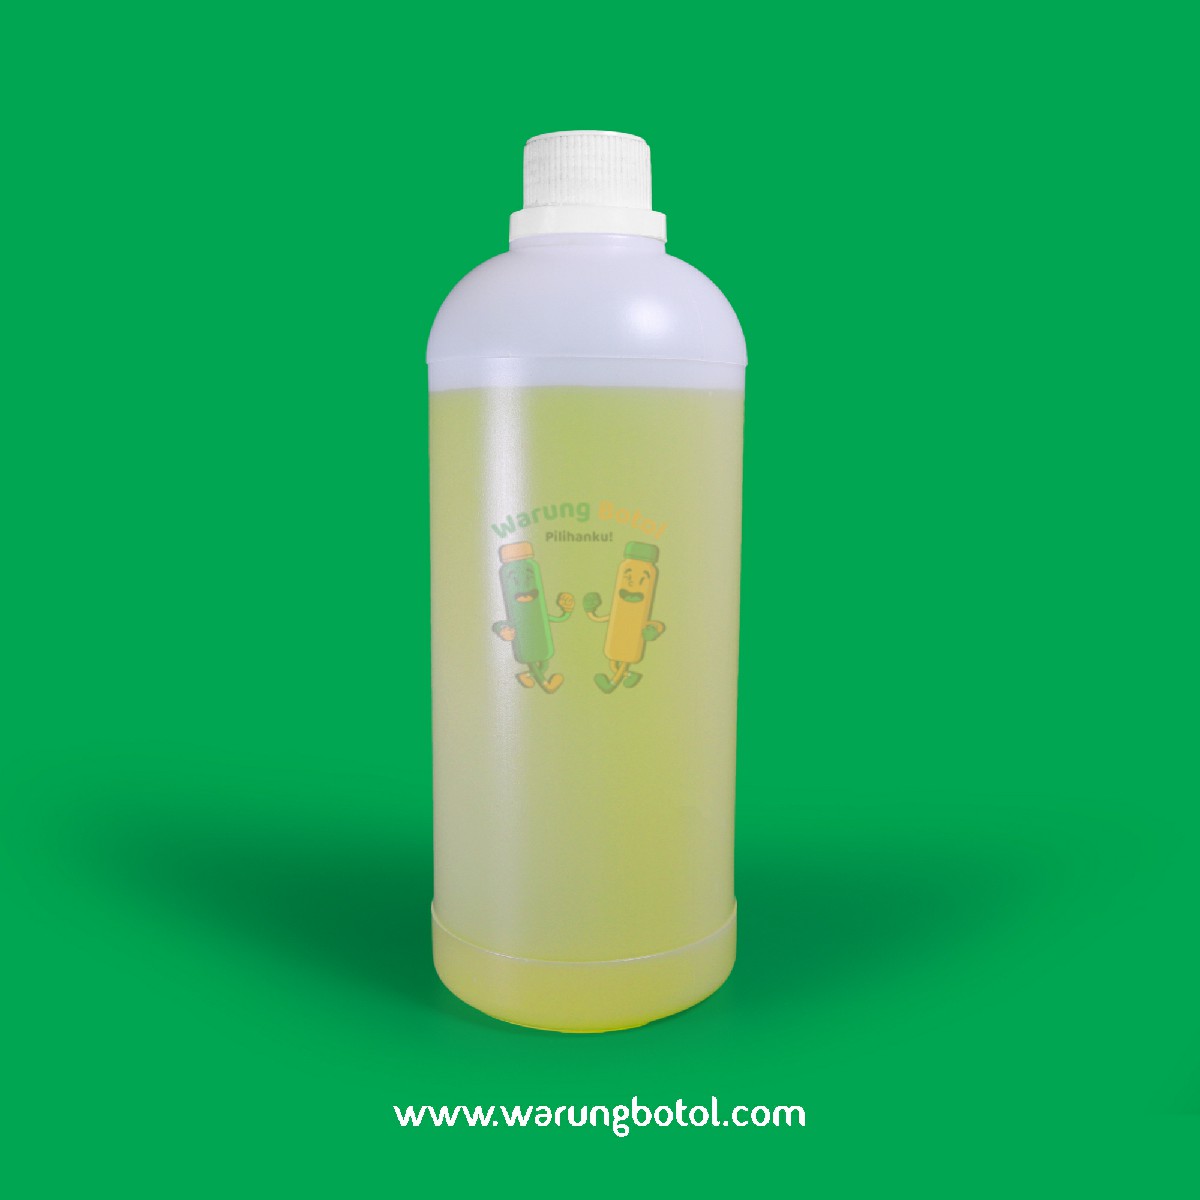 distributor toko jual botol plastik labor untuk bahan kimia 1000ml natural murah terdekat bandung jakarta bogor bekasi